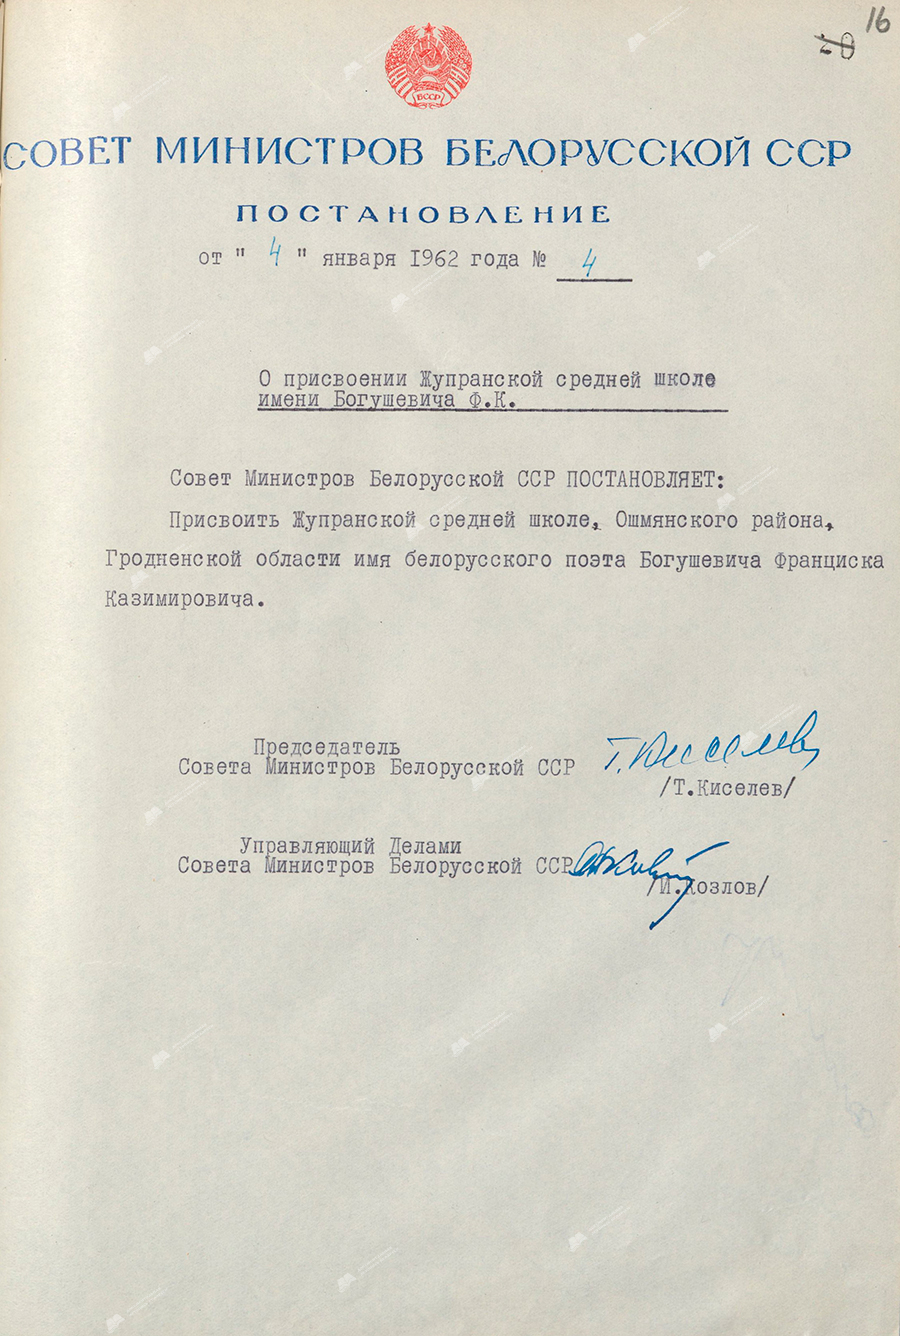 Beschluss Nr. 4 des Ministerrats der BSSR «Über die Benennung der Zhupra-Sekundarschule nach Bogushevich F.K.»-с. 0